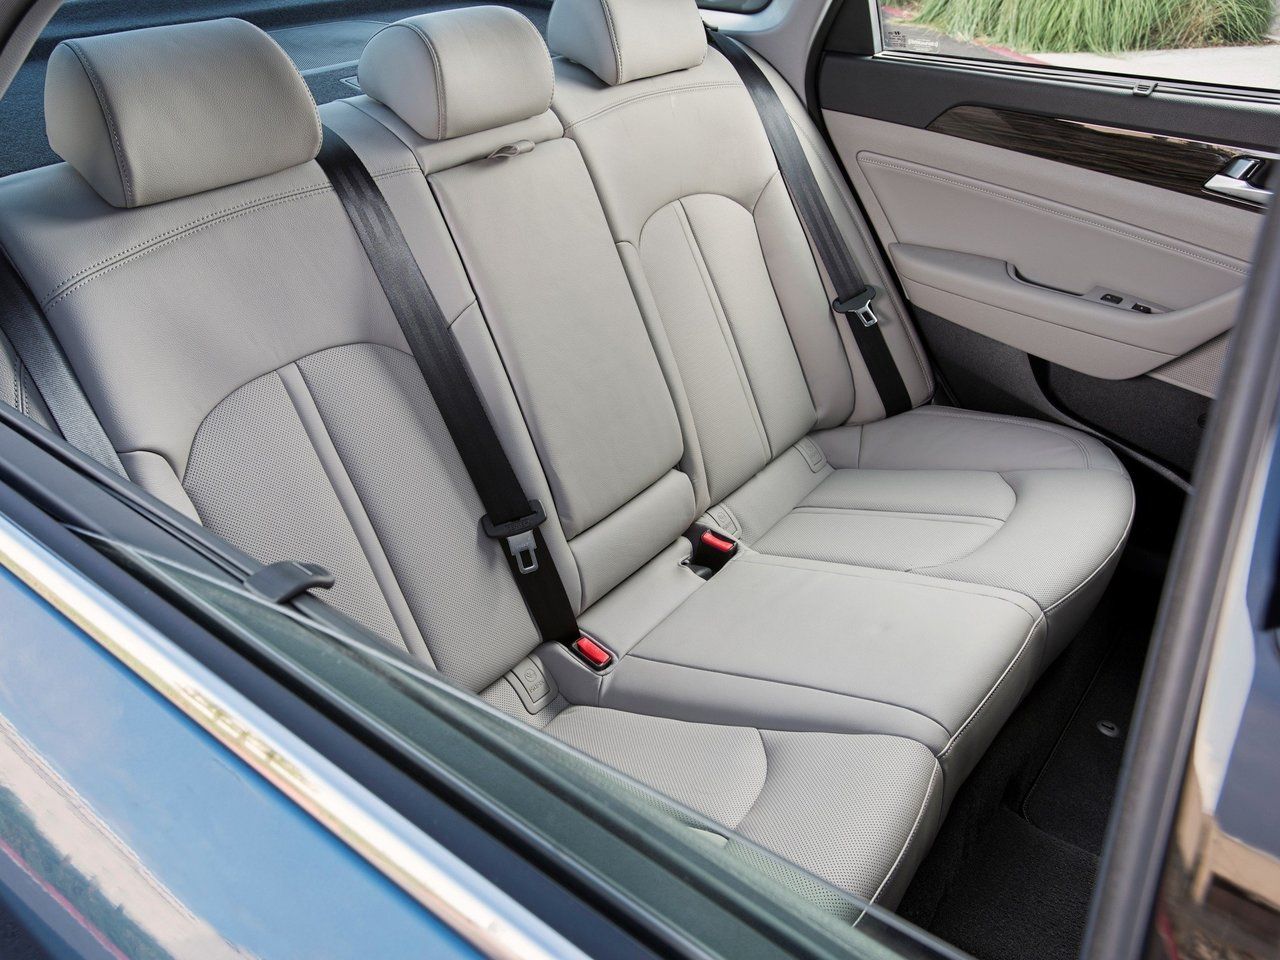 Hyundai Sonata Hybrid 2015 Rear Seat